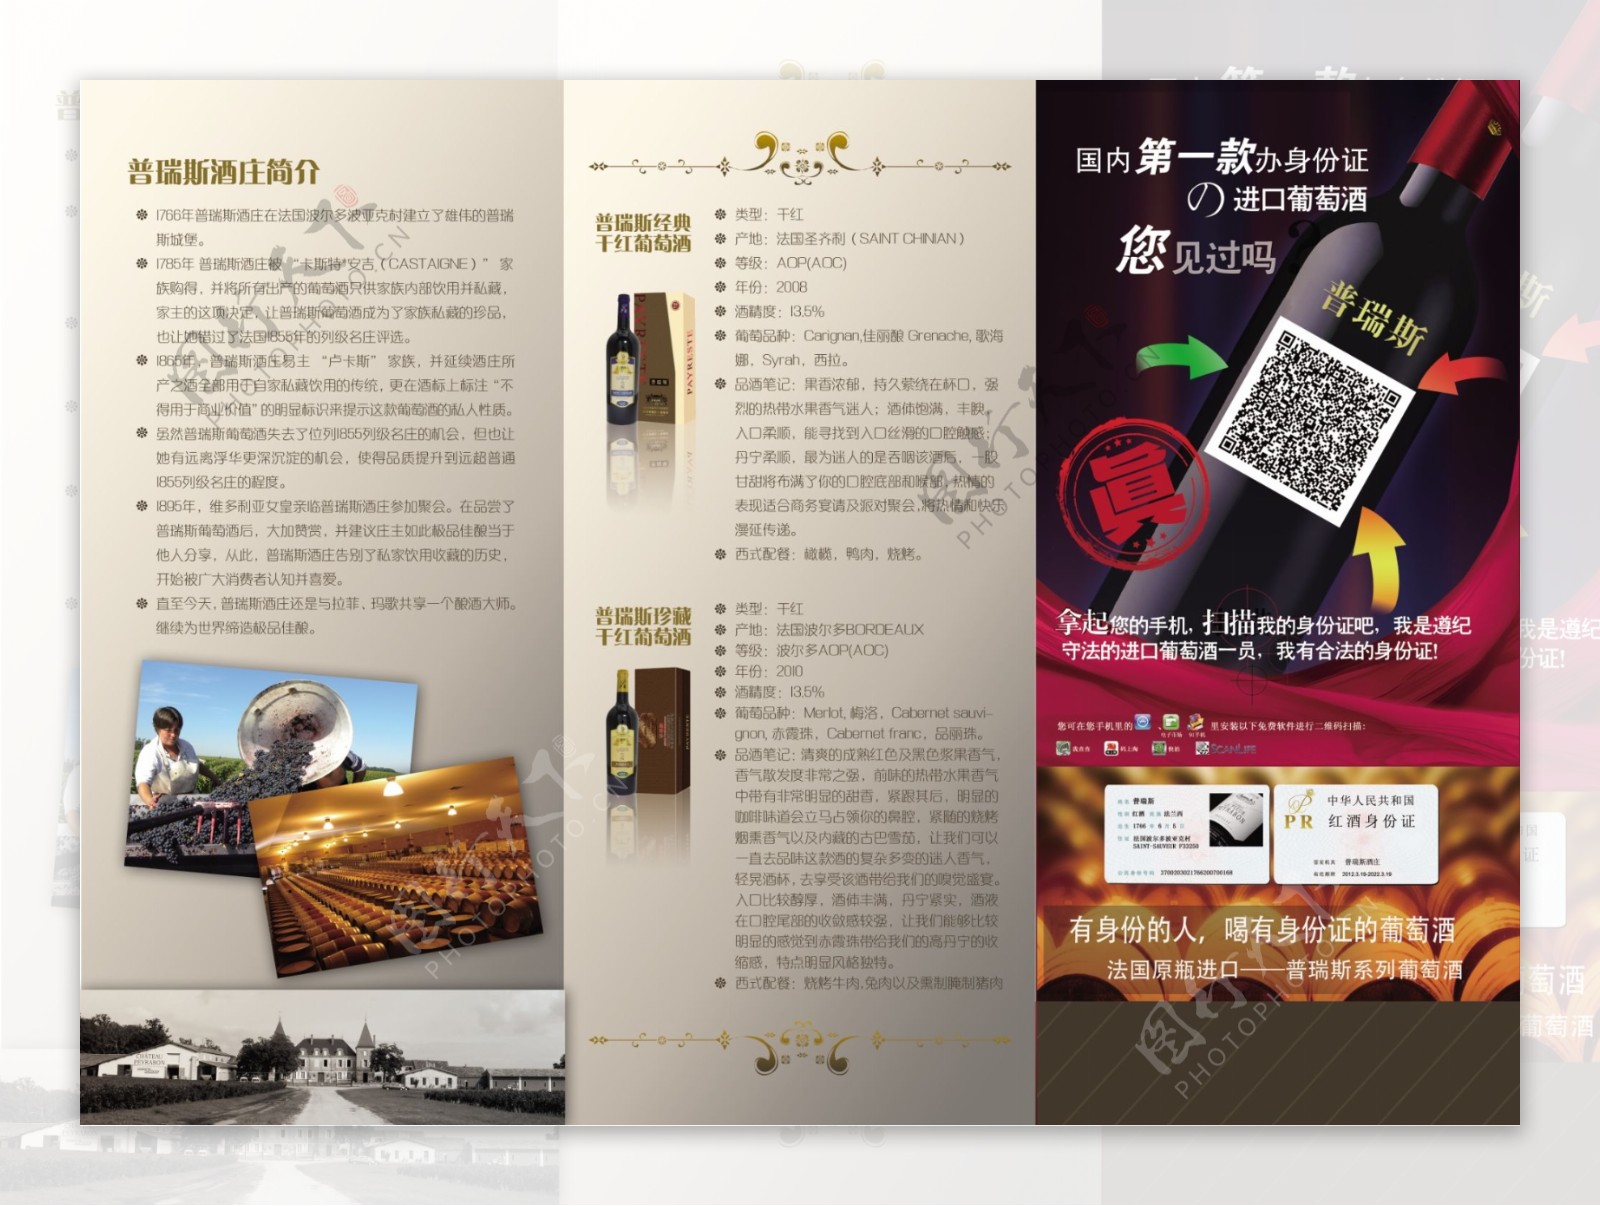 葡萄酒三折页设计高档质感品质